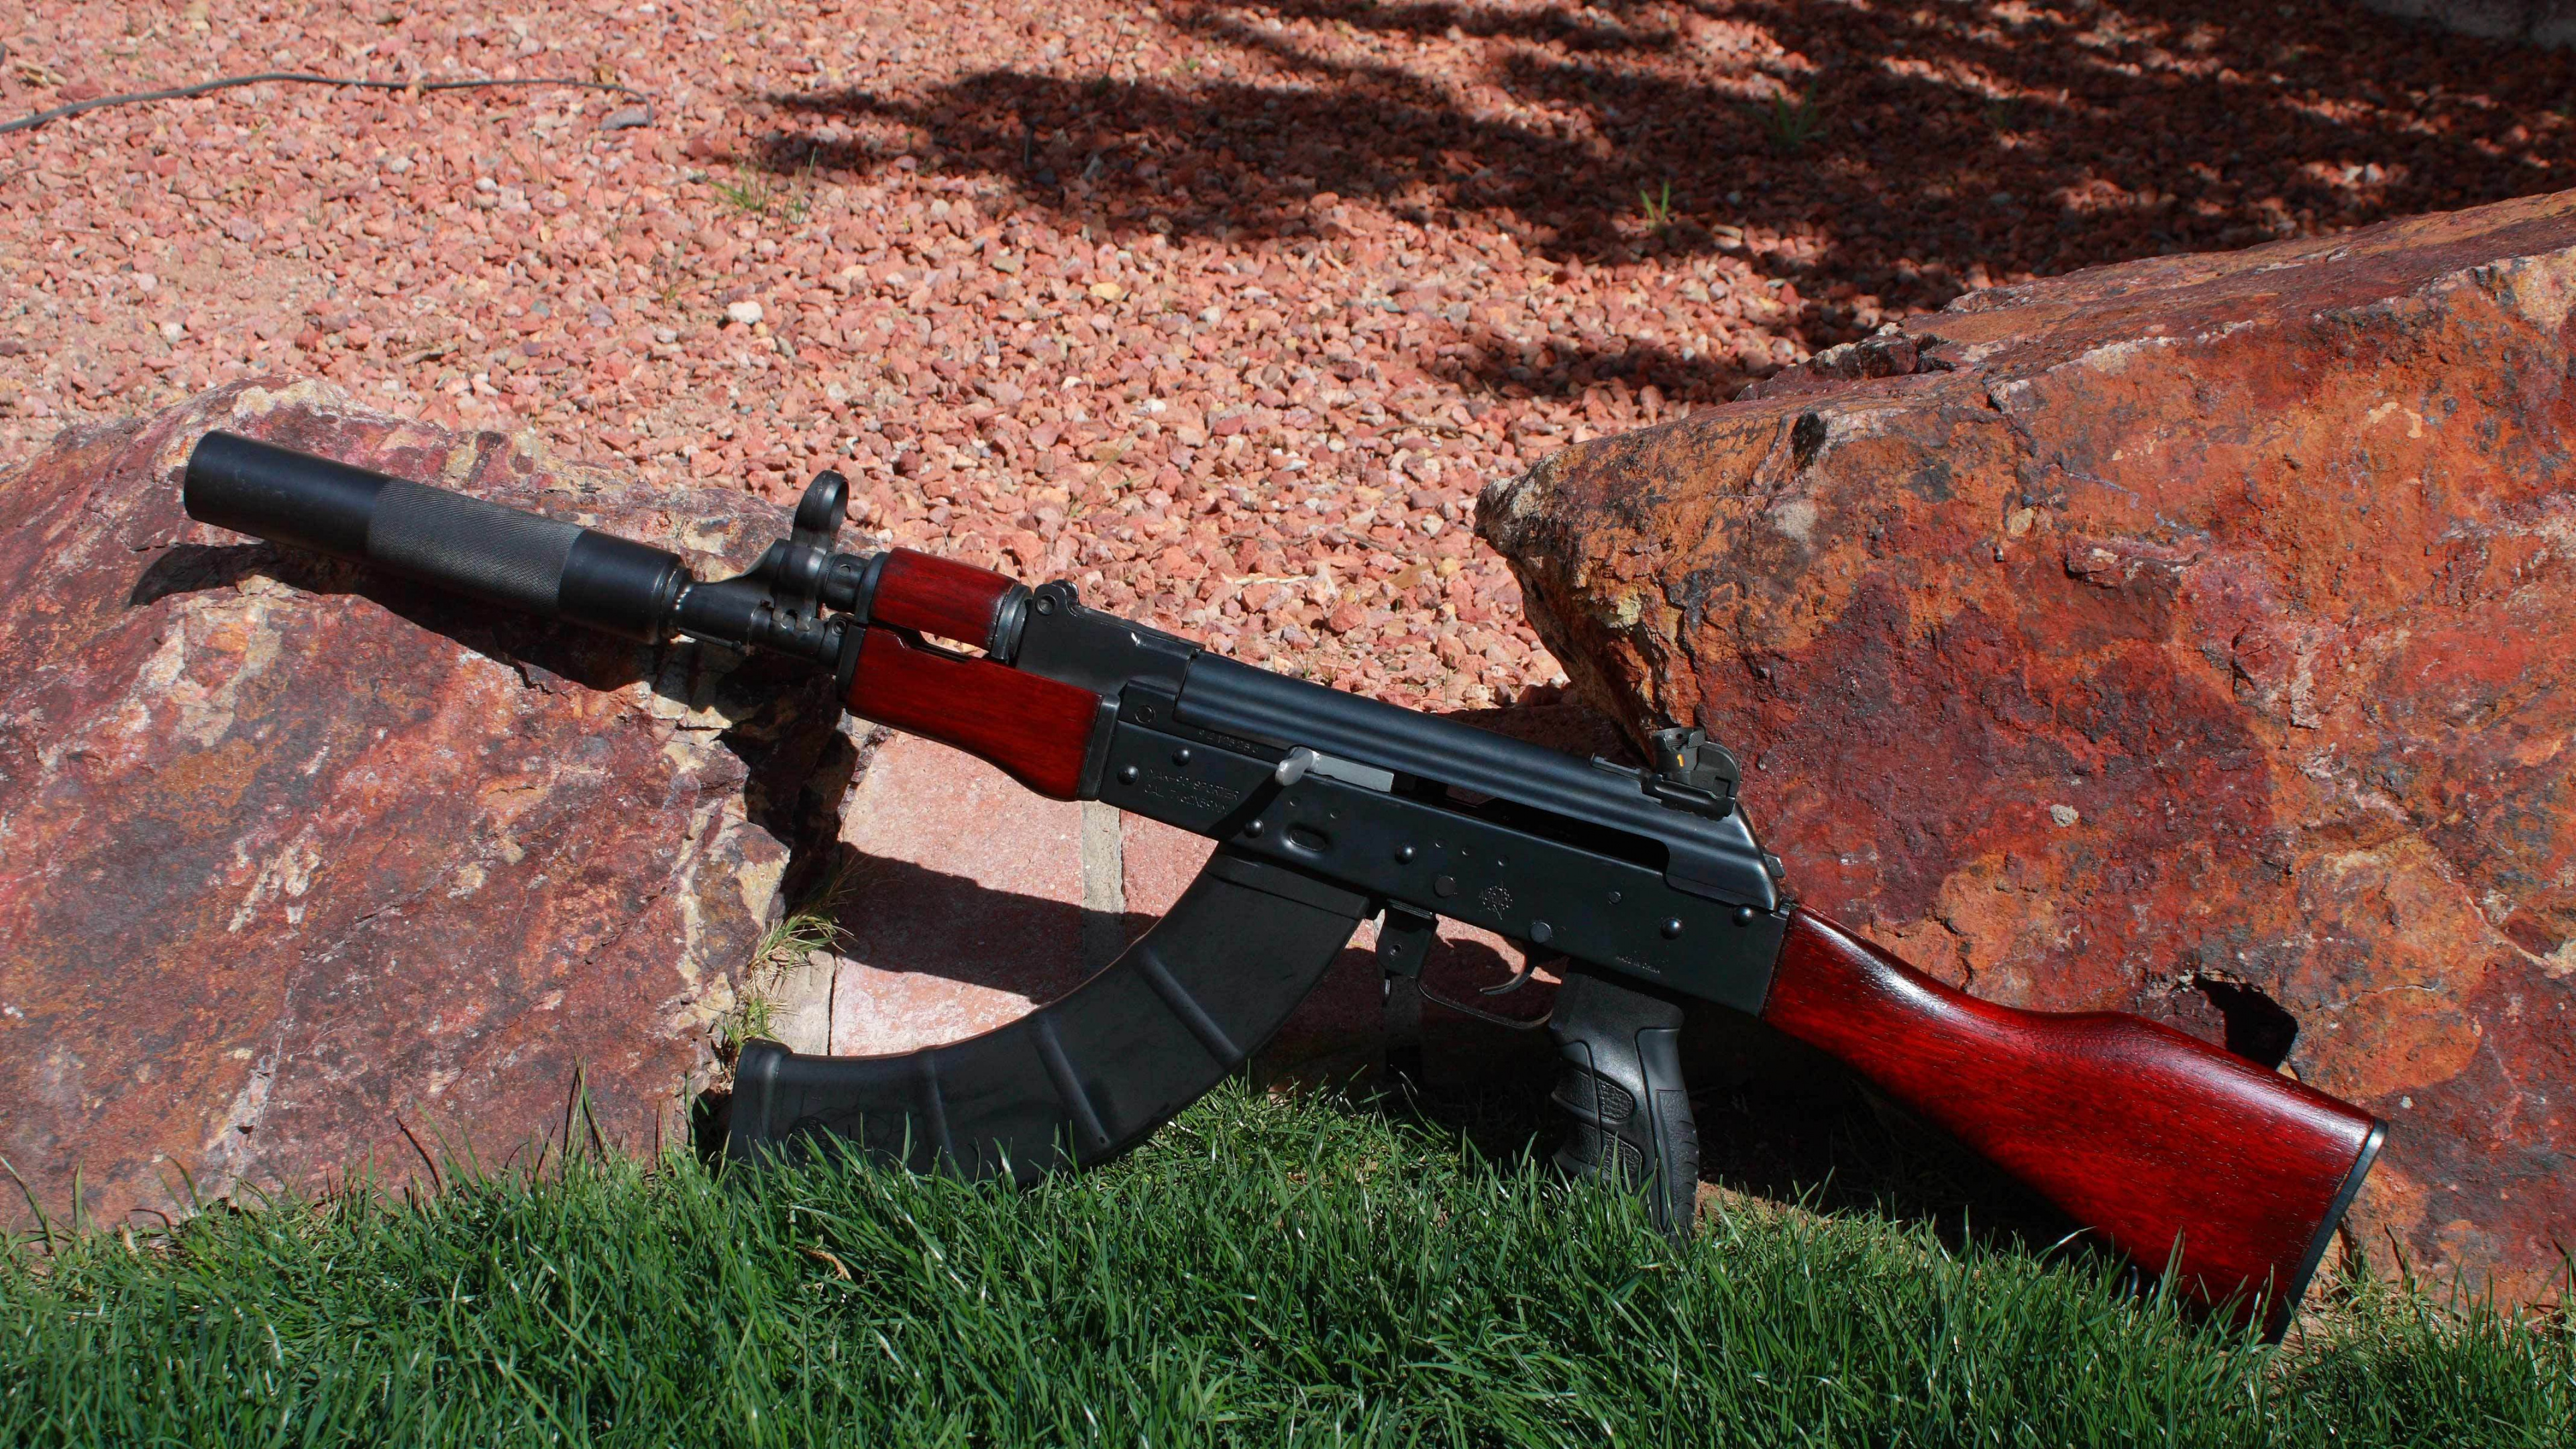 Ak-74, Feuerwaffe, Gewehr, Luftgewehr, Trigger. Wallpaper in 3840x2160 Resolution